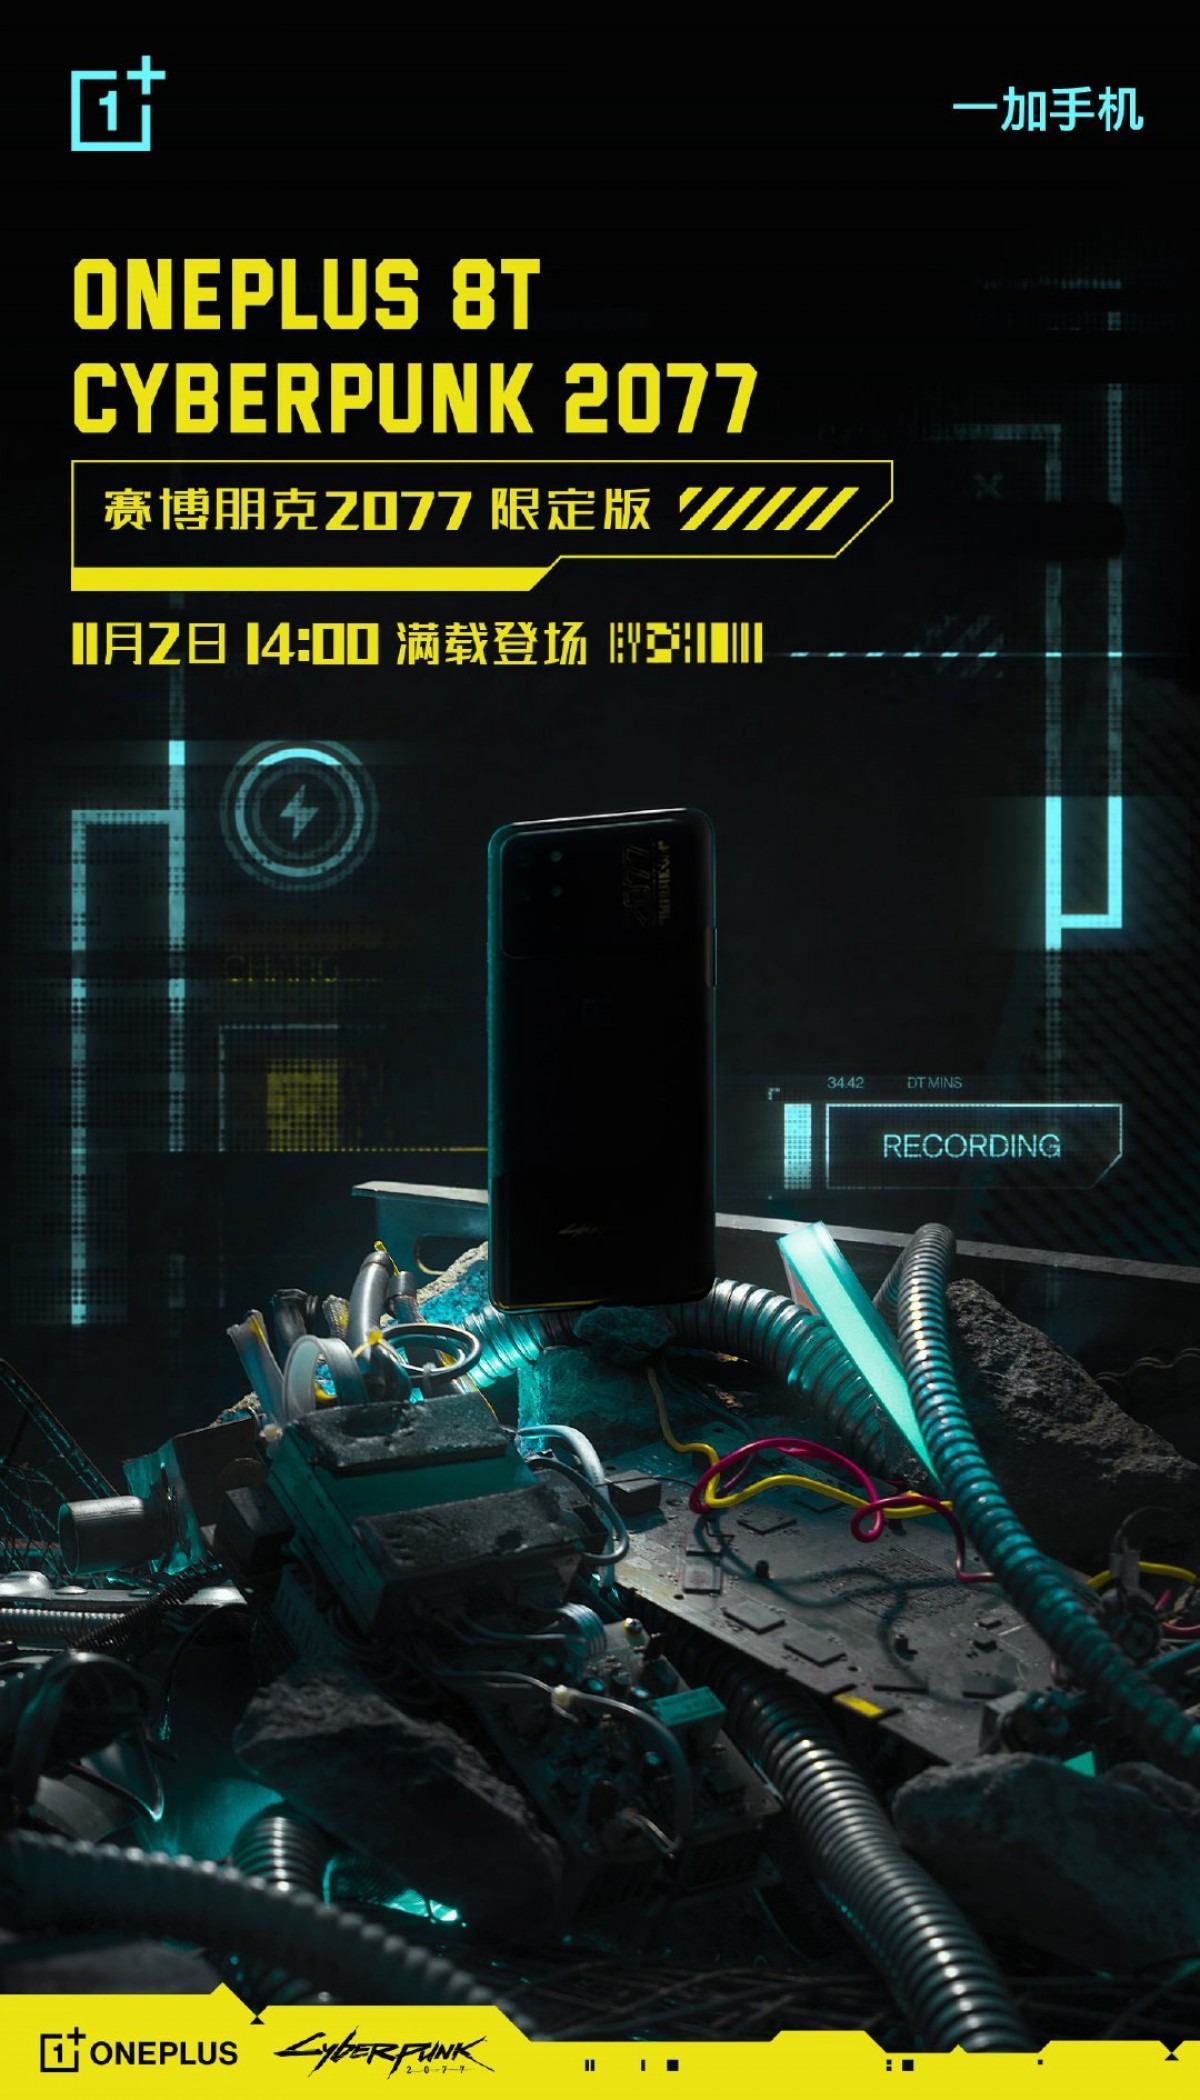 OnePlus 8T Cyberpunk 2077 versiyonunun tanıtım tarihi belli oldu